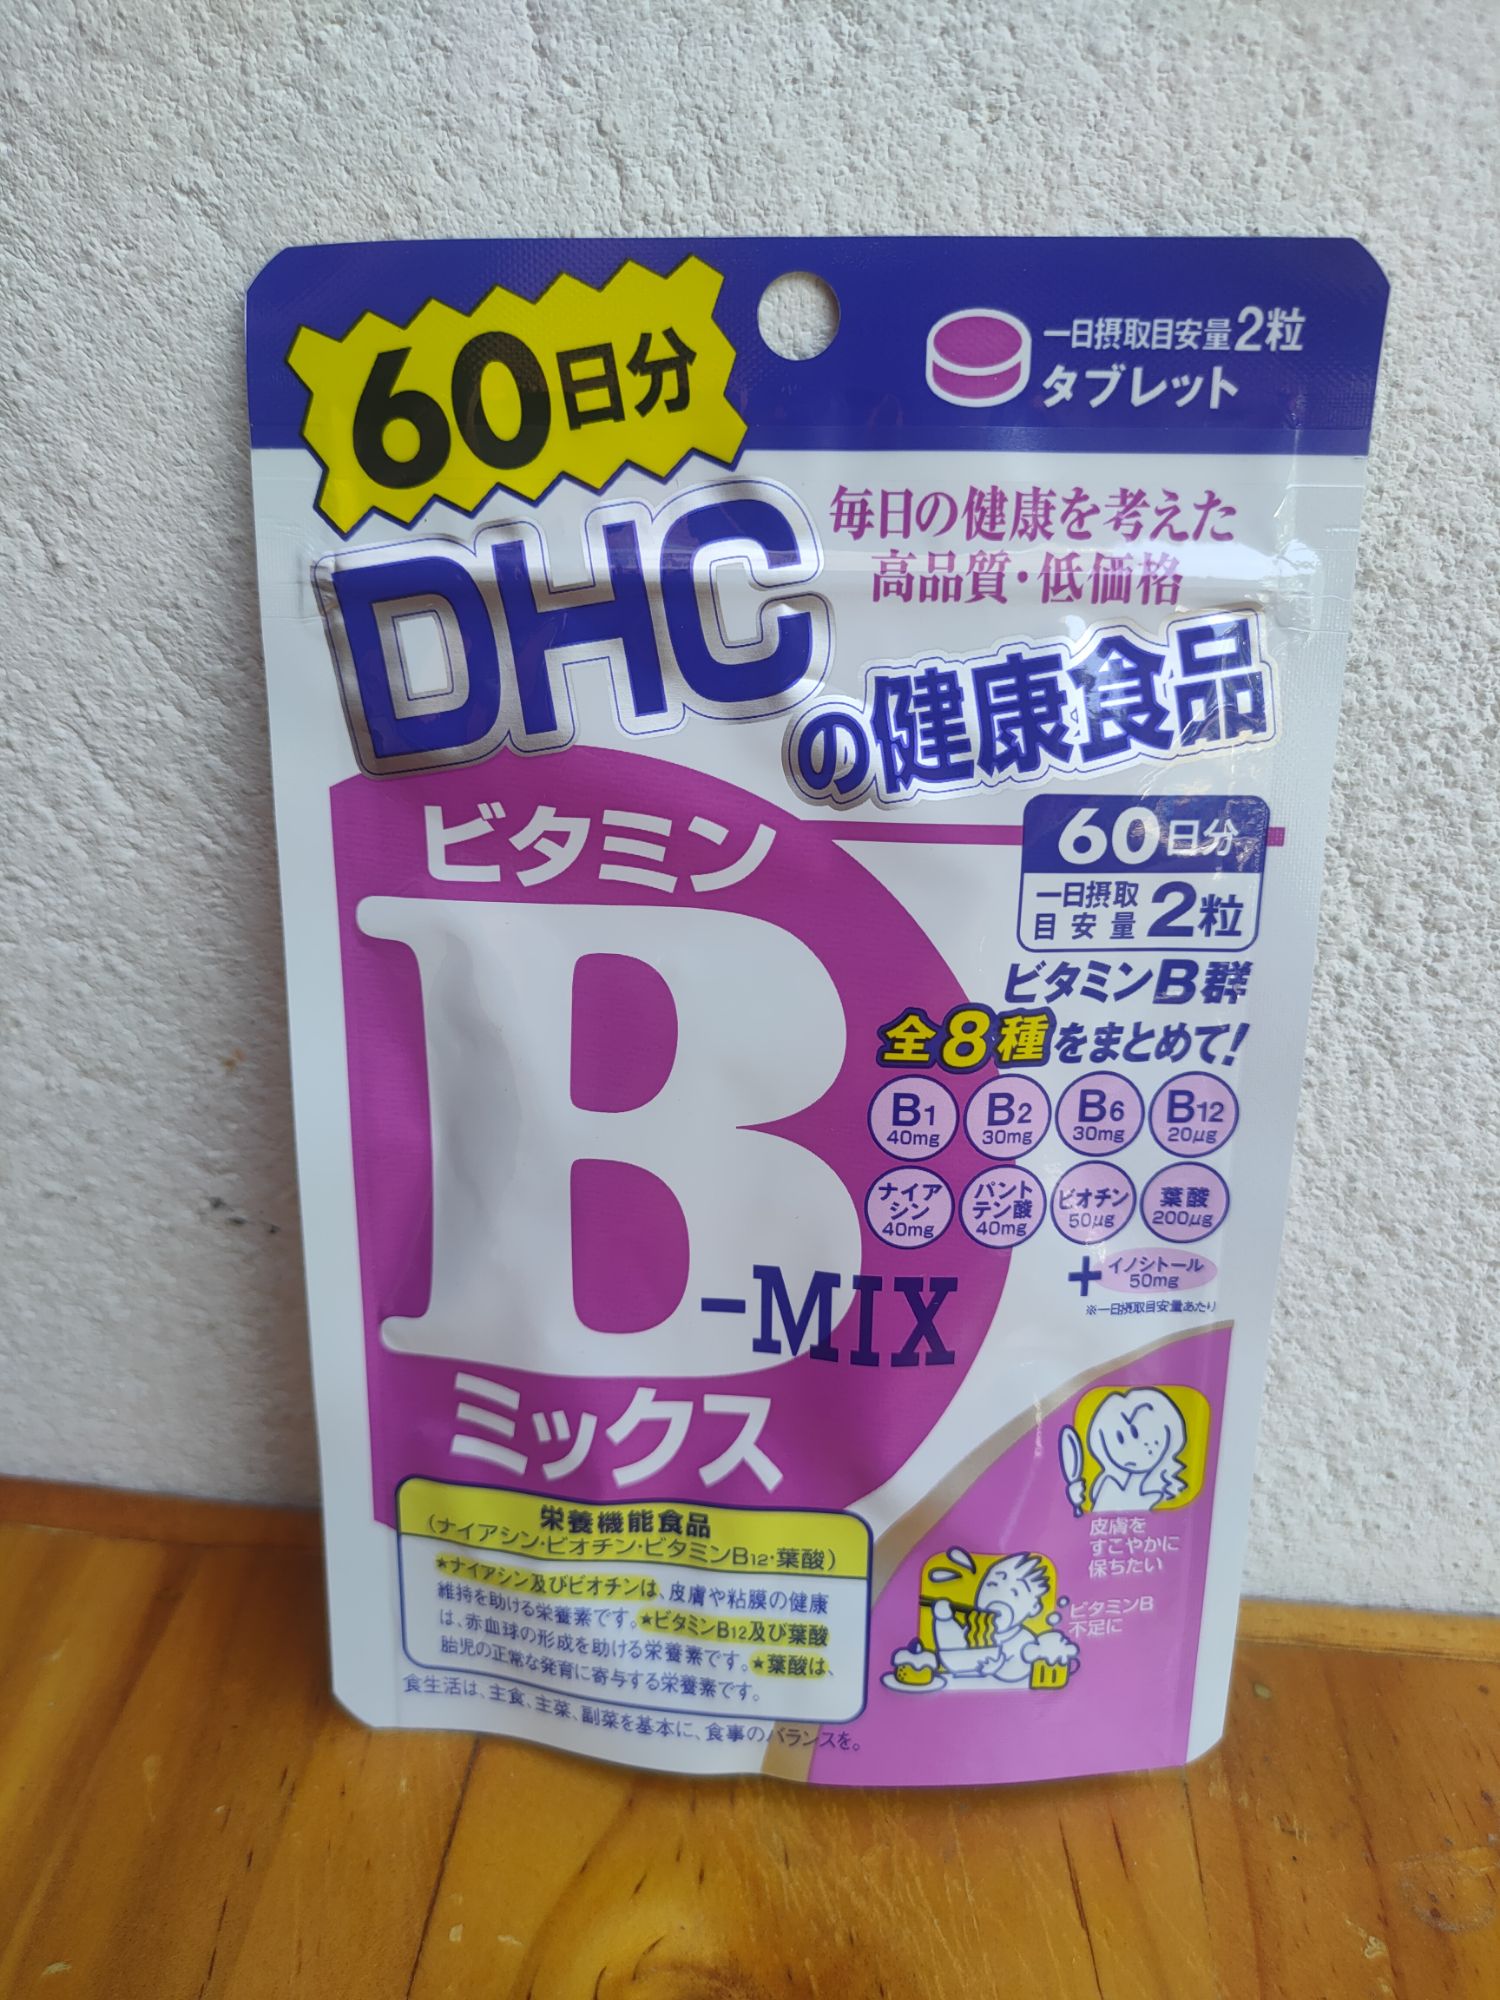 [[ราคาต่อซอง]] DHC Vitamin B-mix 60 วัน ราคาดังกล่าวเป็นราคาต่อซองนะคะ